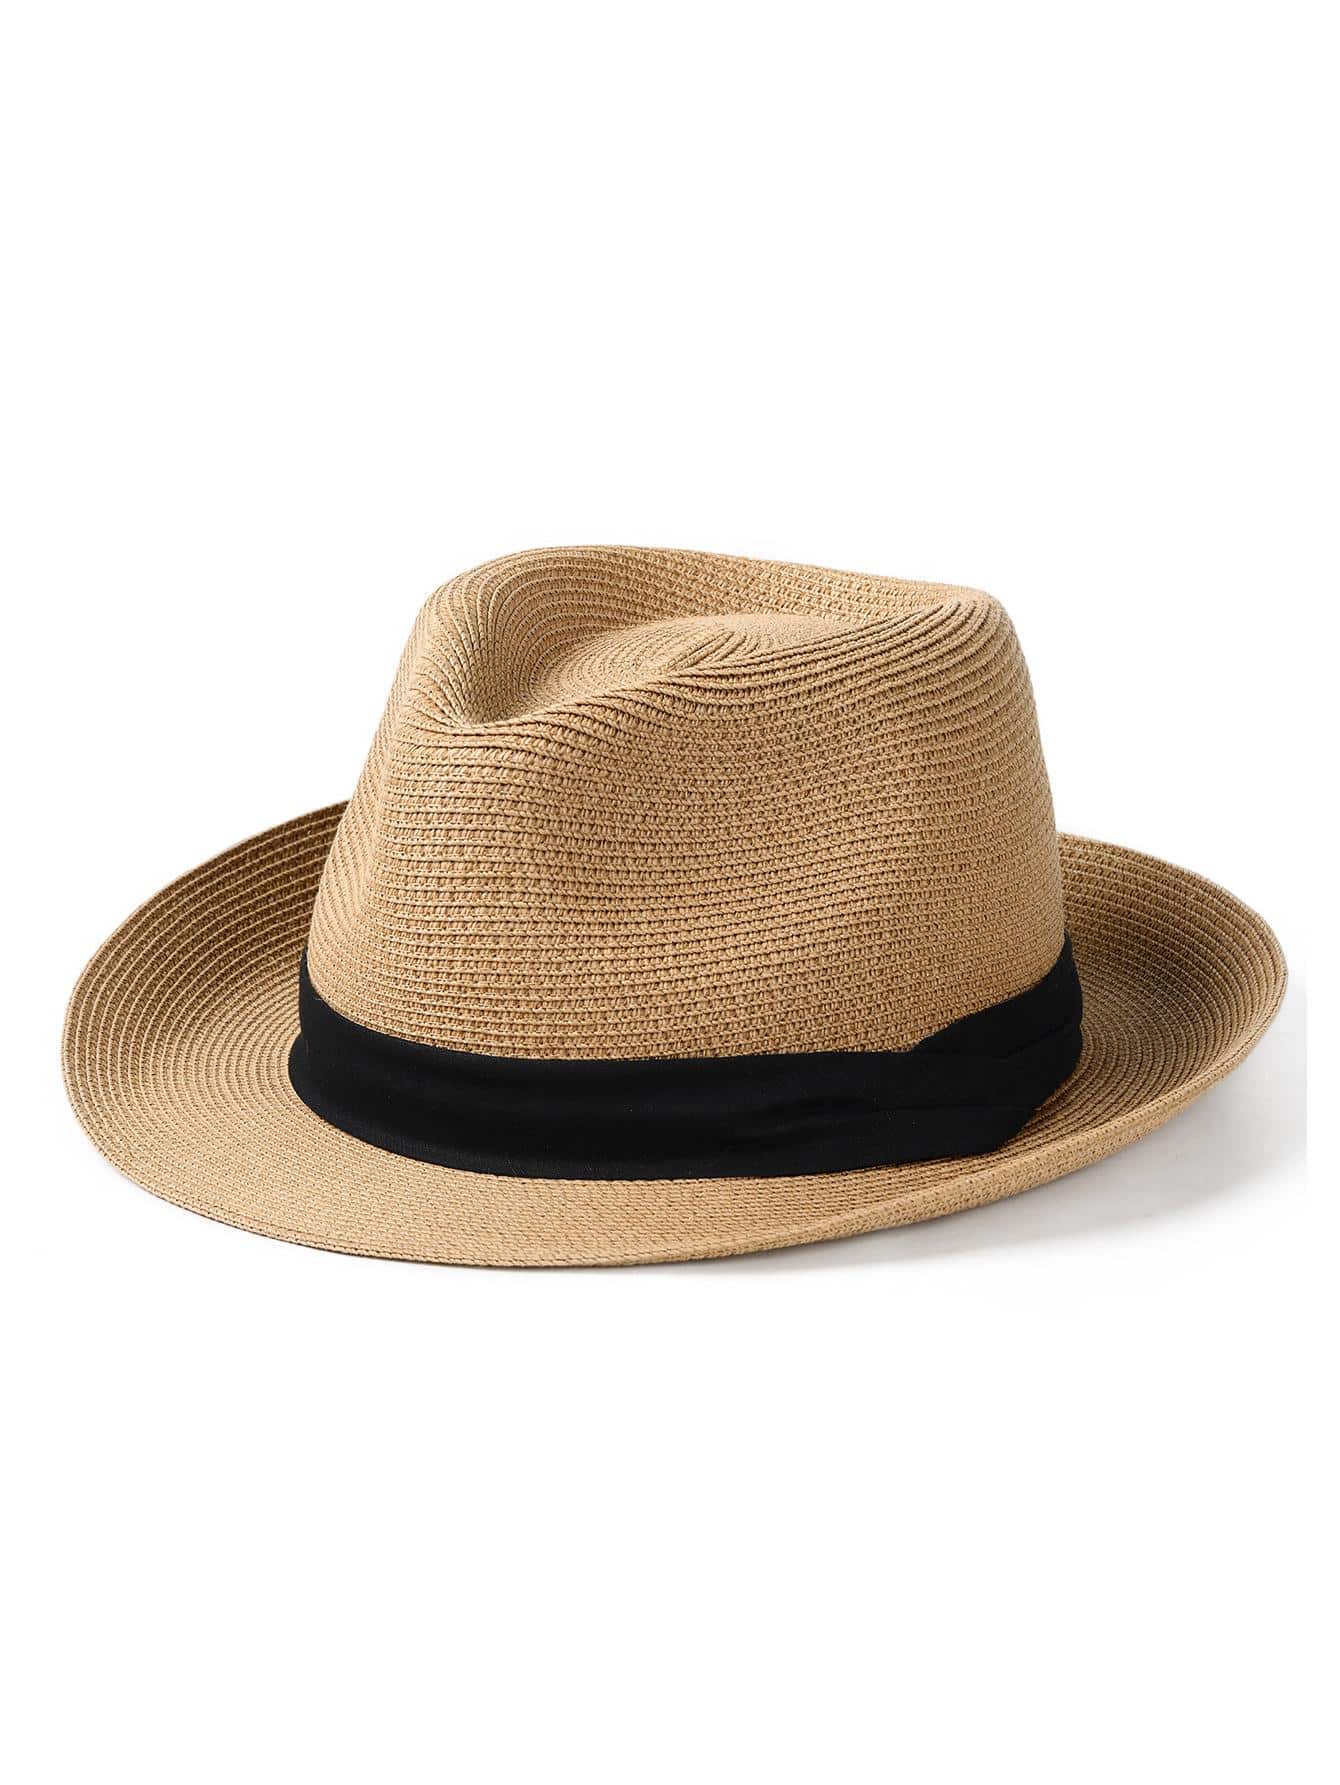 1шт унисекс лента декор бохо соломенная шляпа для улицы, хаки 1 шт мужская соломенная шляпа на лето черный